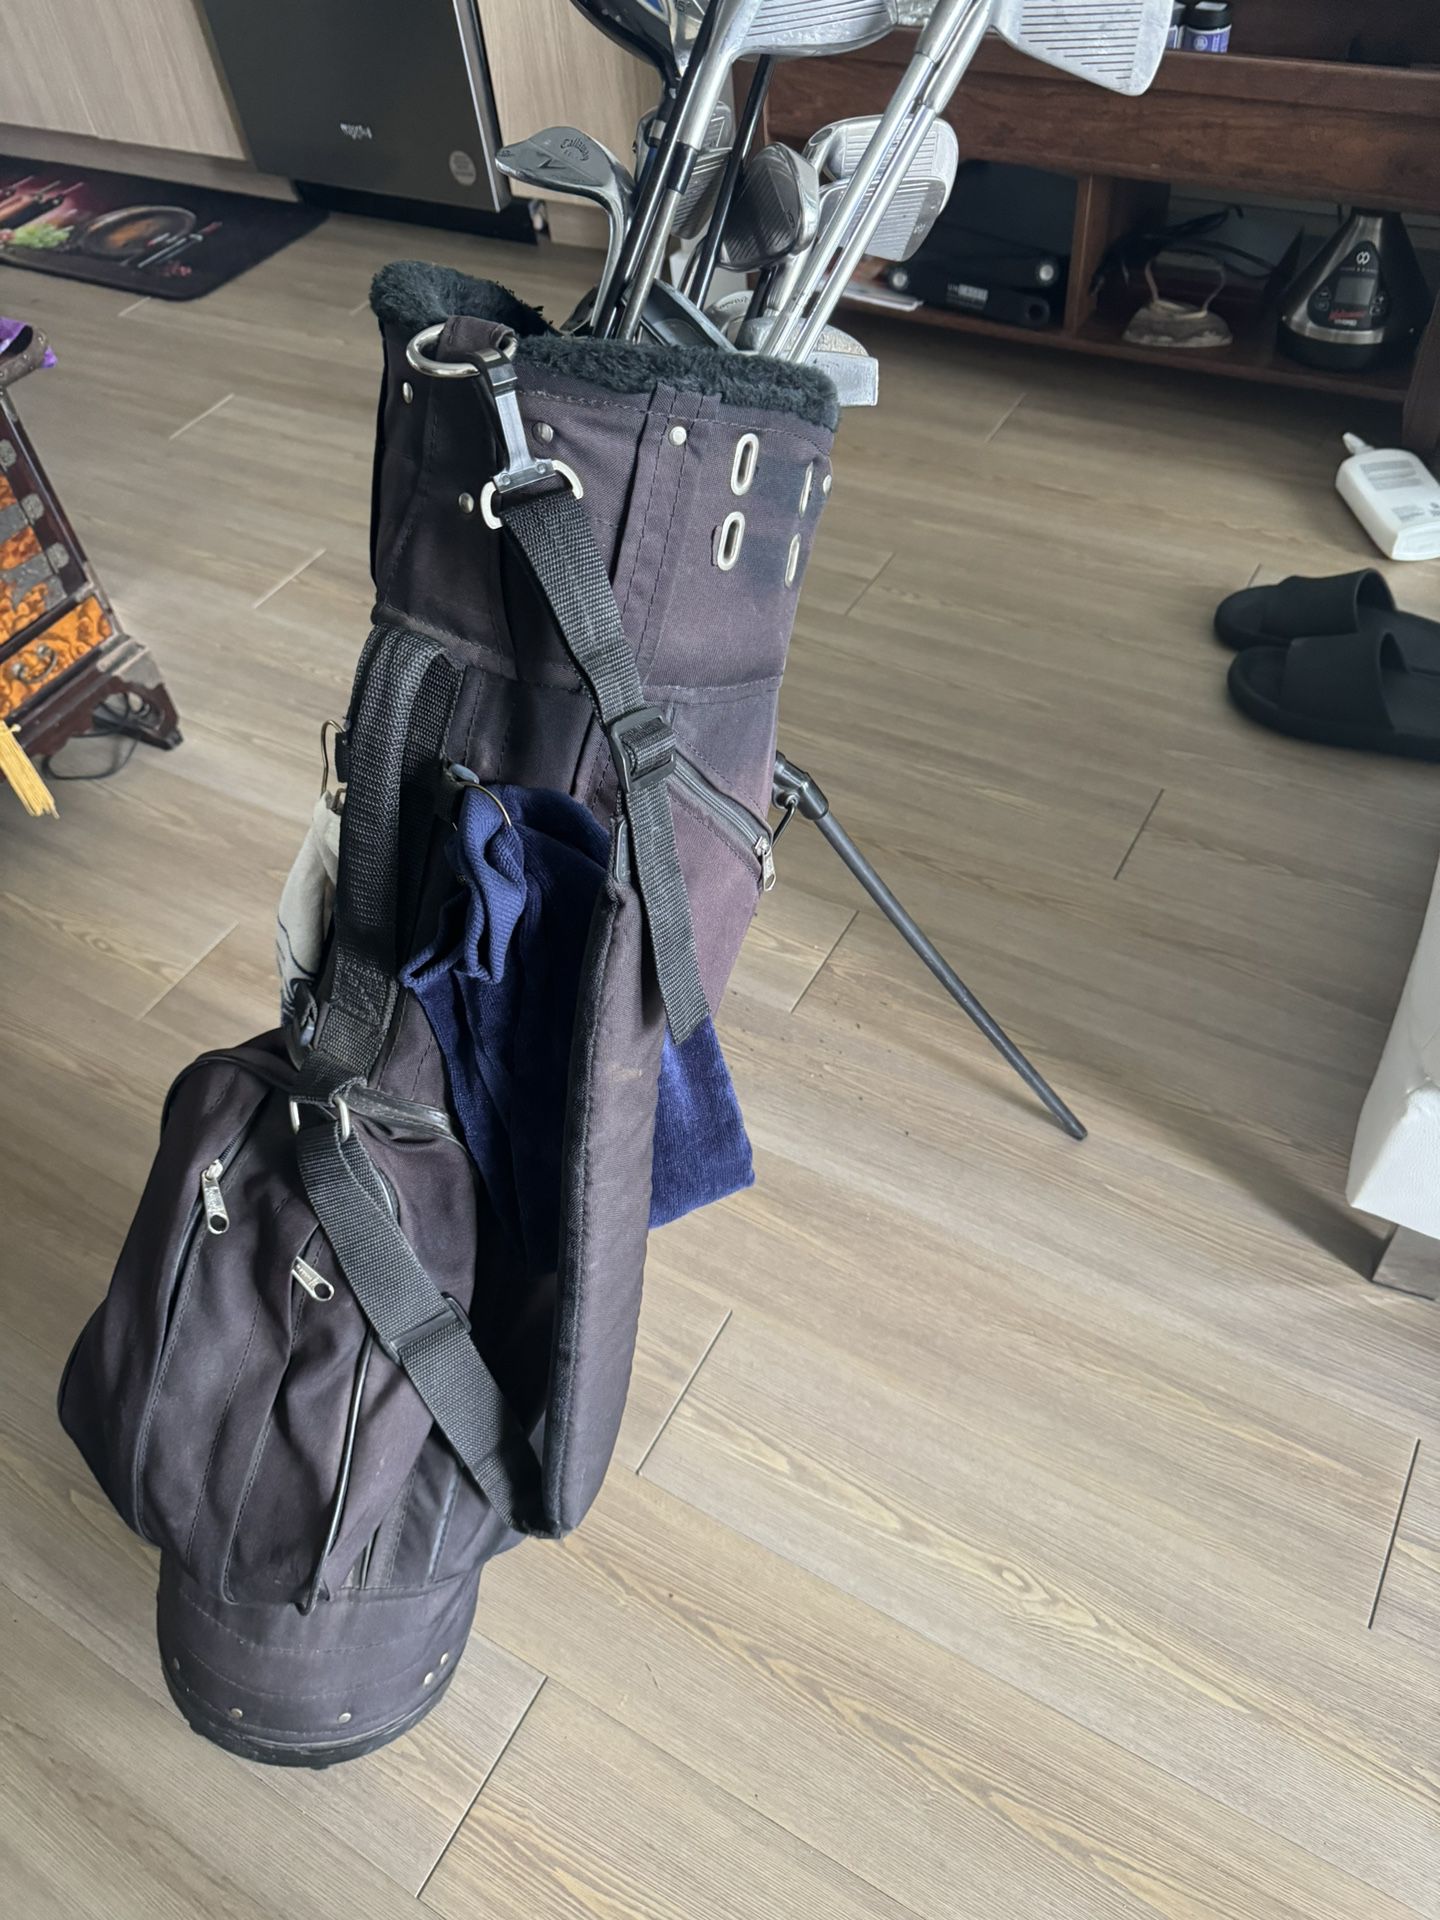 Golf Clubs W/bag